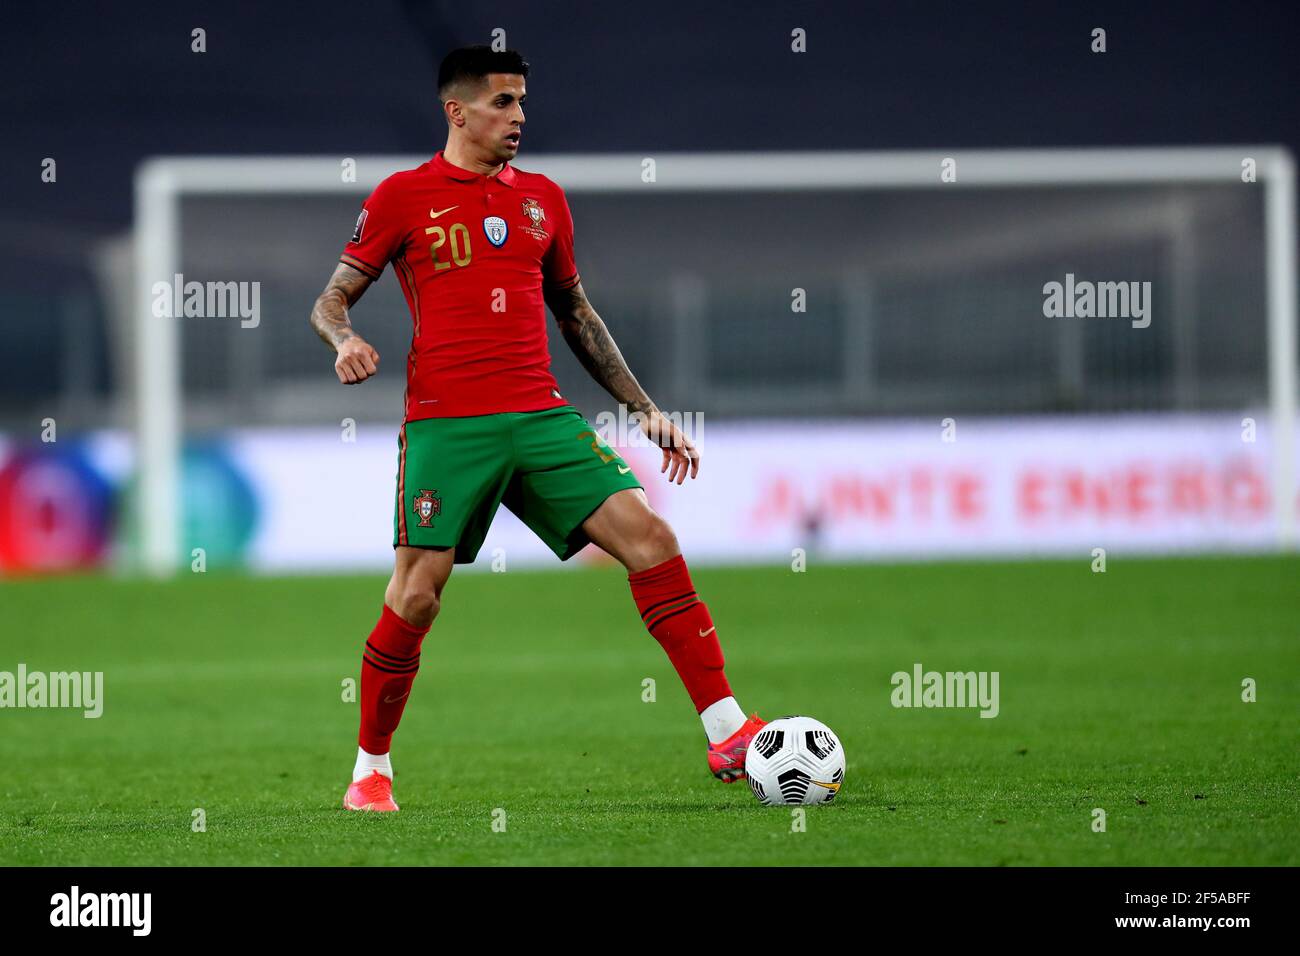 Joao Cancelo du Portugal en action pendant le match des qualificatifs de la coupe du monde de la FIFA 2022 entre le Portugal et l'Azerbaïdjan. Le Portugal remporte 1-0 victoires sur l'Azerbaïdjan. Banque D'Images